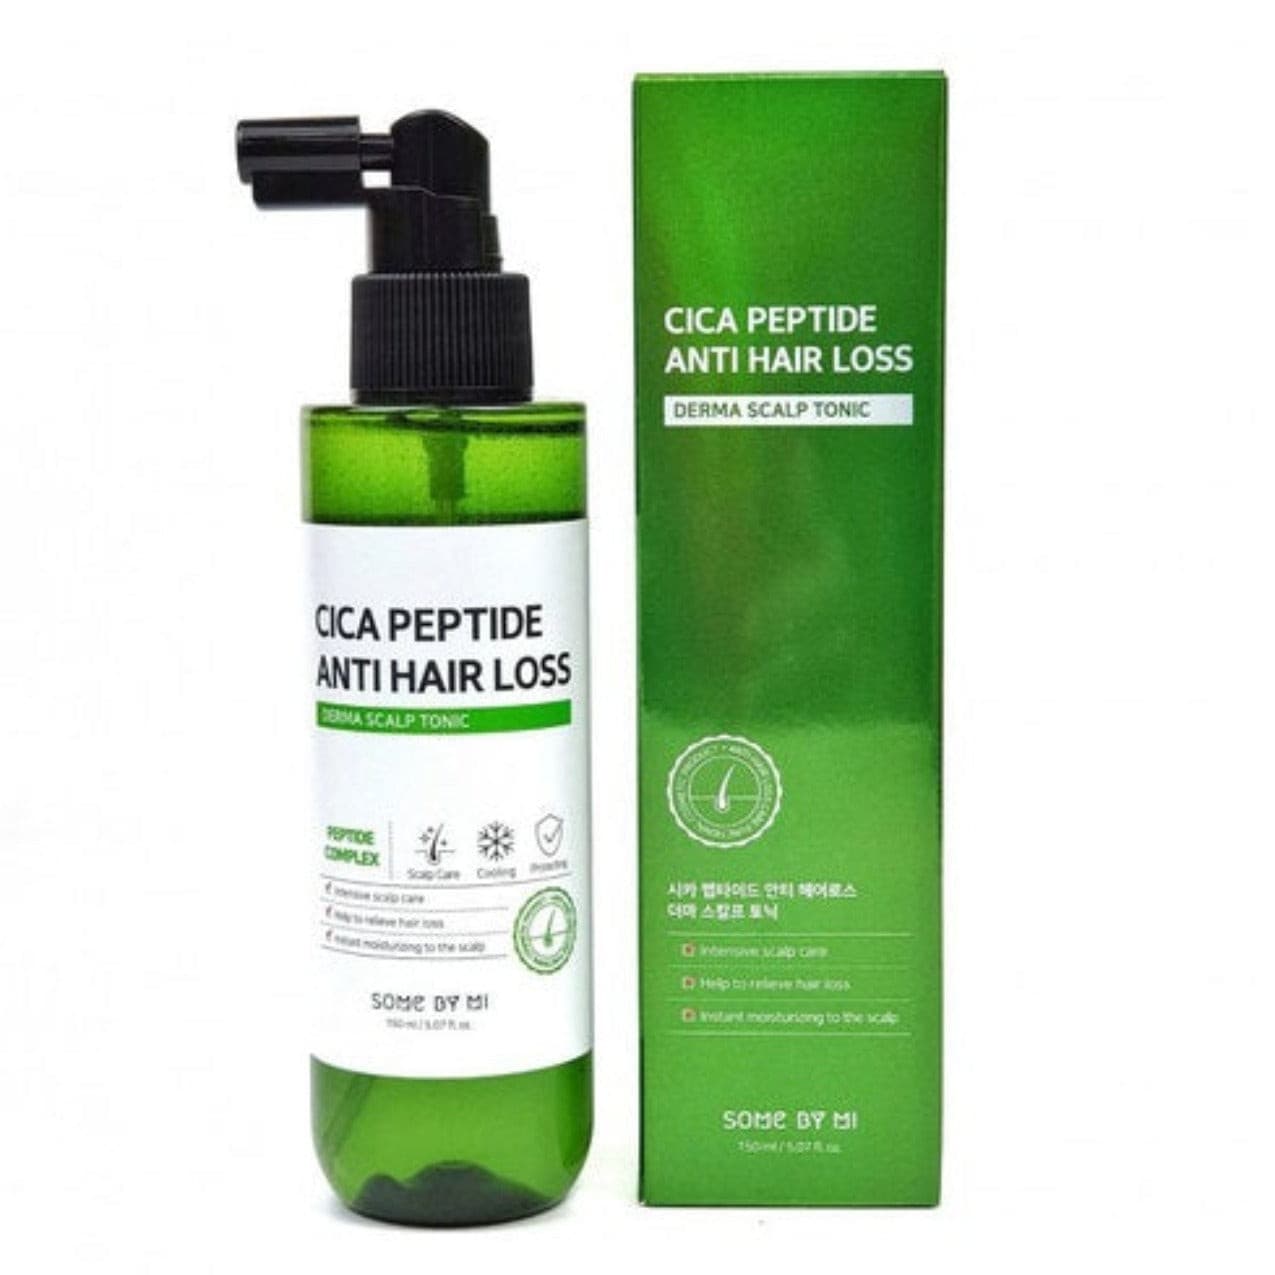 Cica Peptide Anti Hair Loss Derma Scalp Tonic | Tonico anti caida de cabello 150ml - Koelleza Store